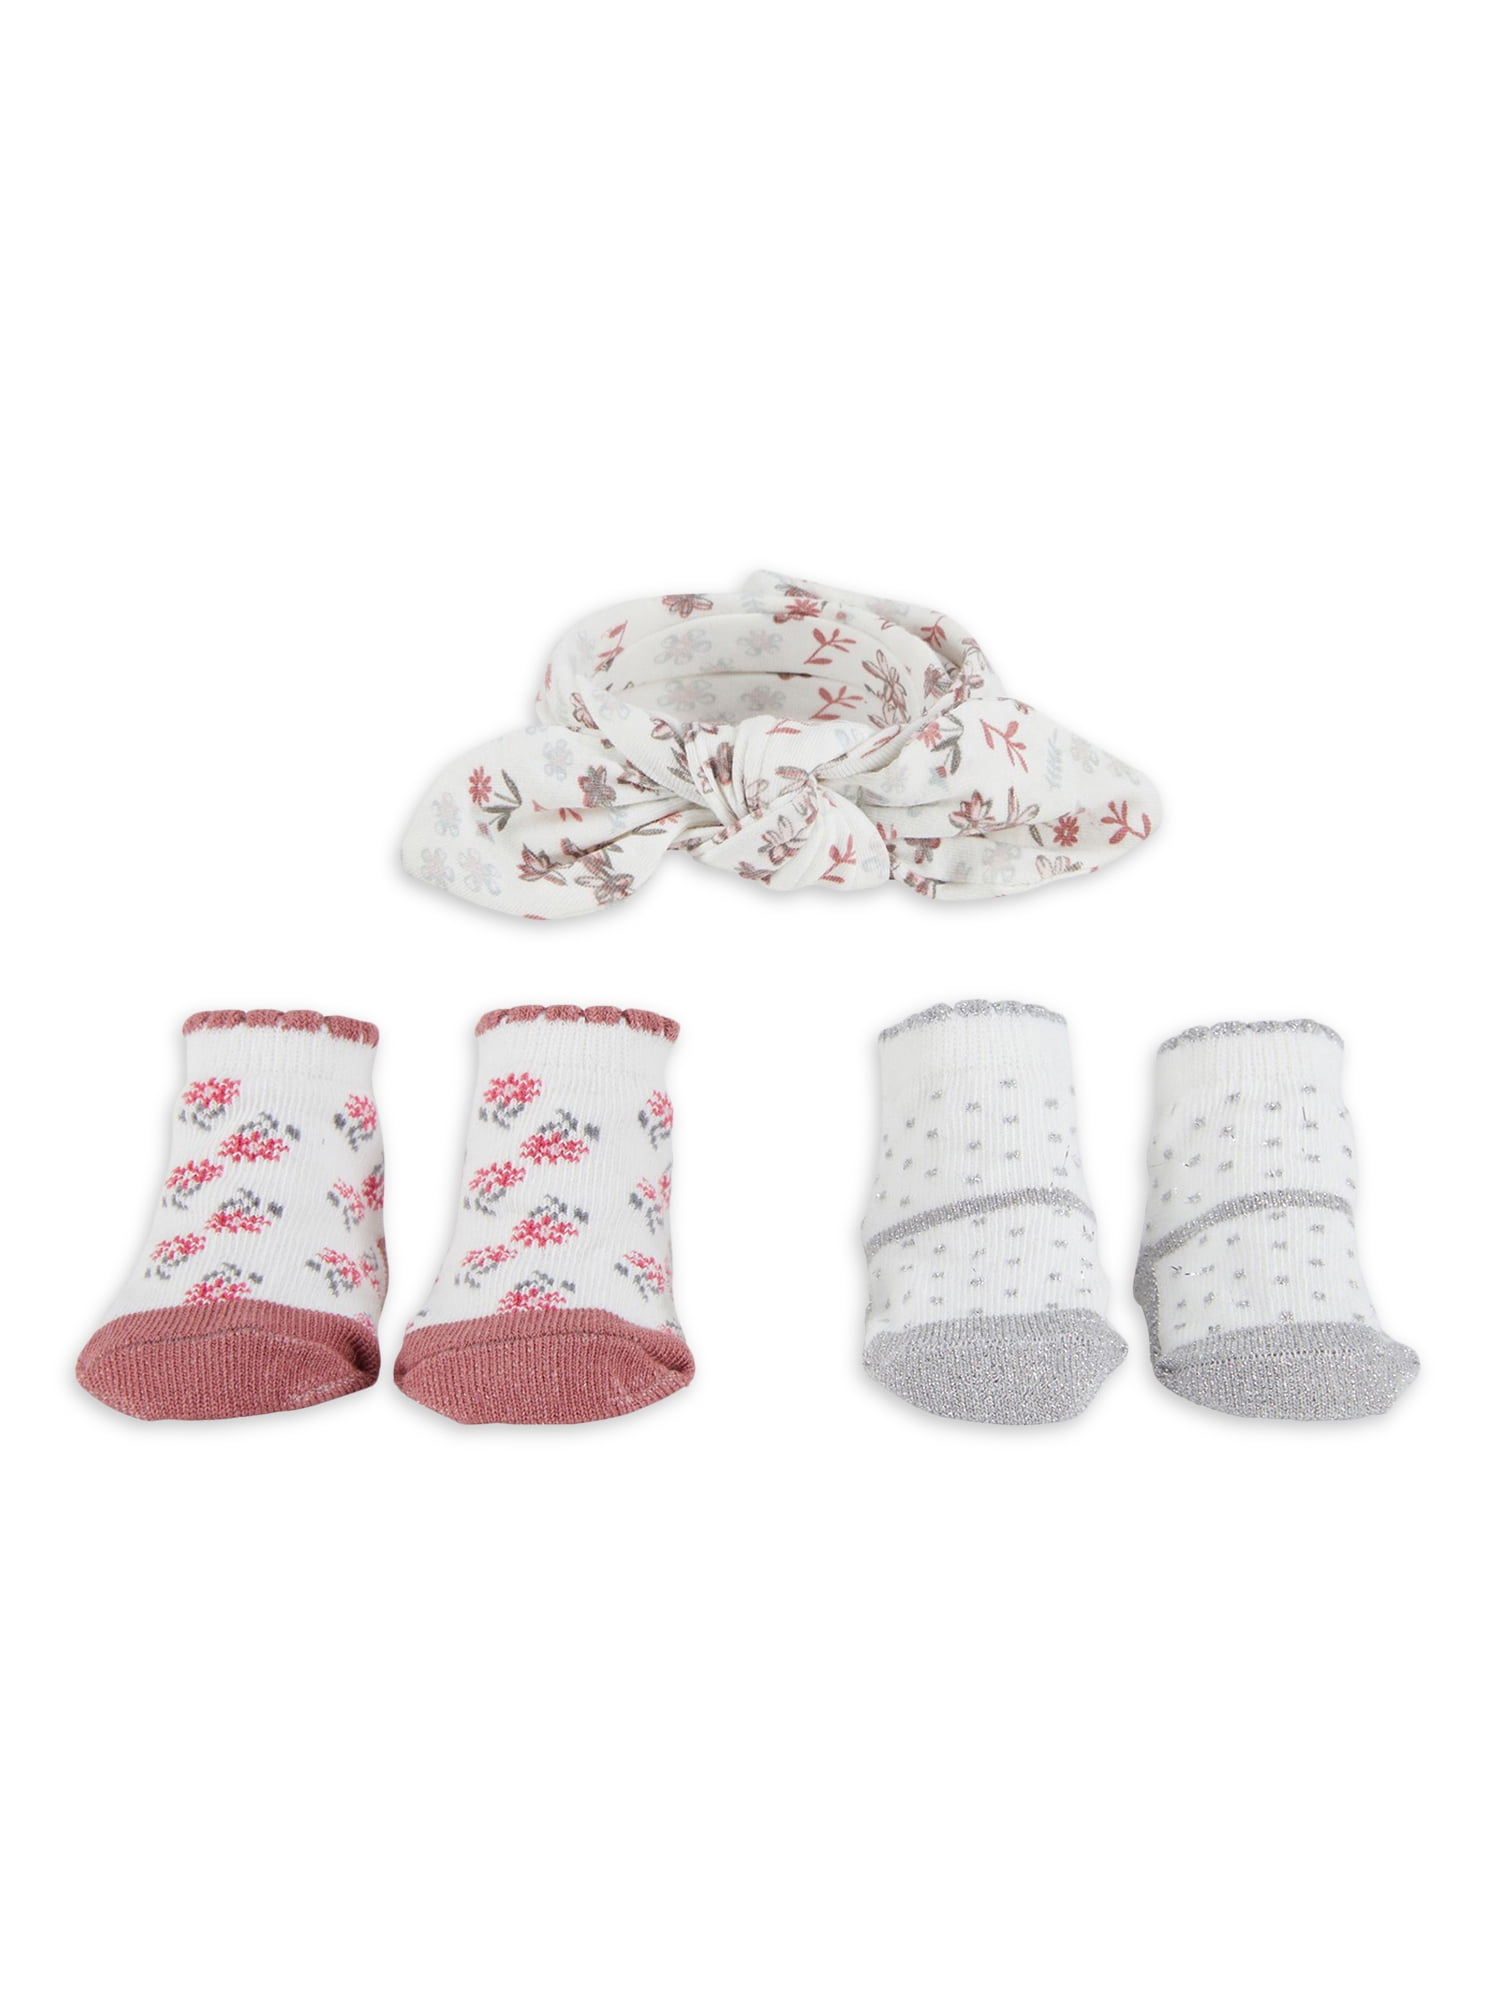 Baby Girls Socks 3PK Pink Floral Newborn Socks NB-3M 3-6M 6-12M Just Too Cute 